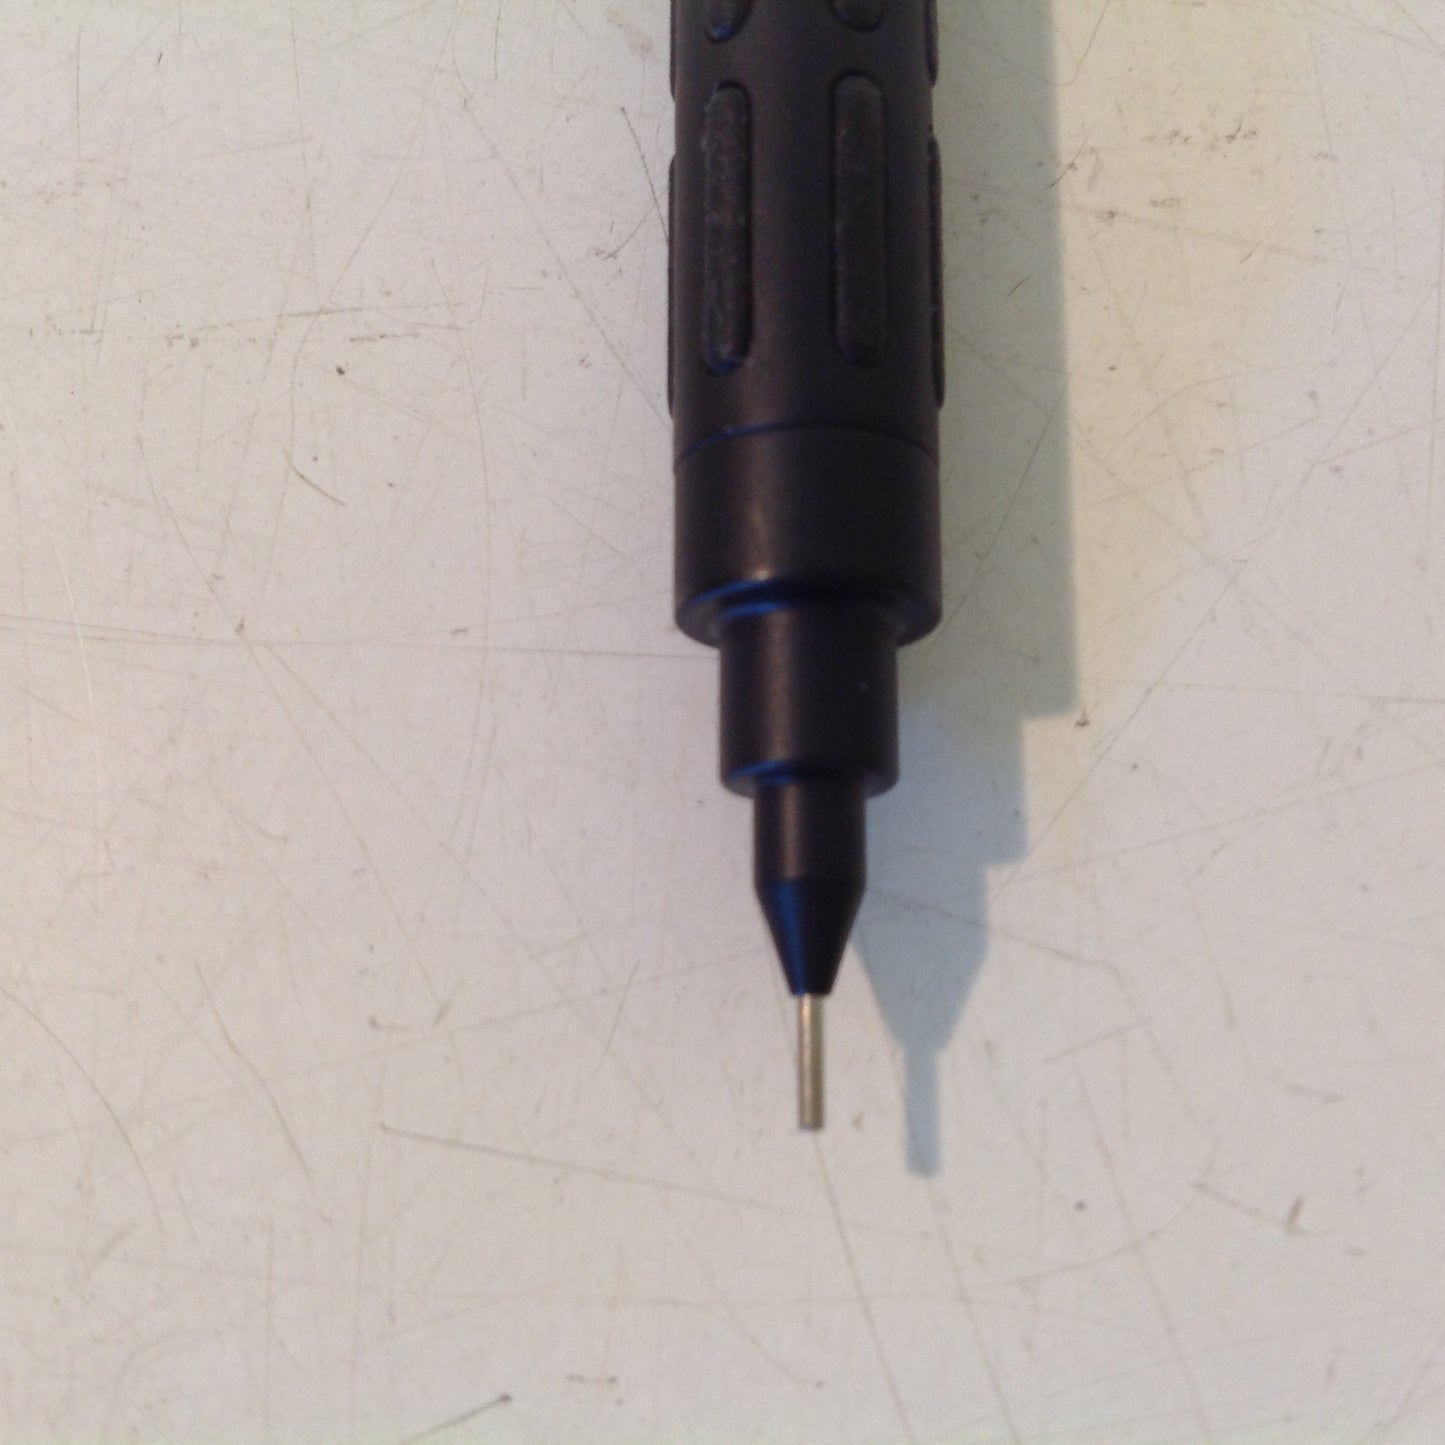 Vintage 1990's NOS Unused Pentel PG1003 Graph 1000 for Pro 0.3 Mechanical Pencil